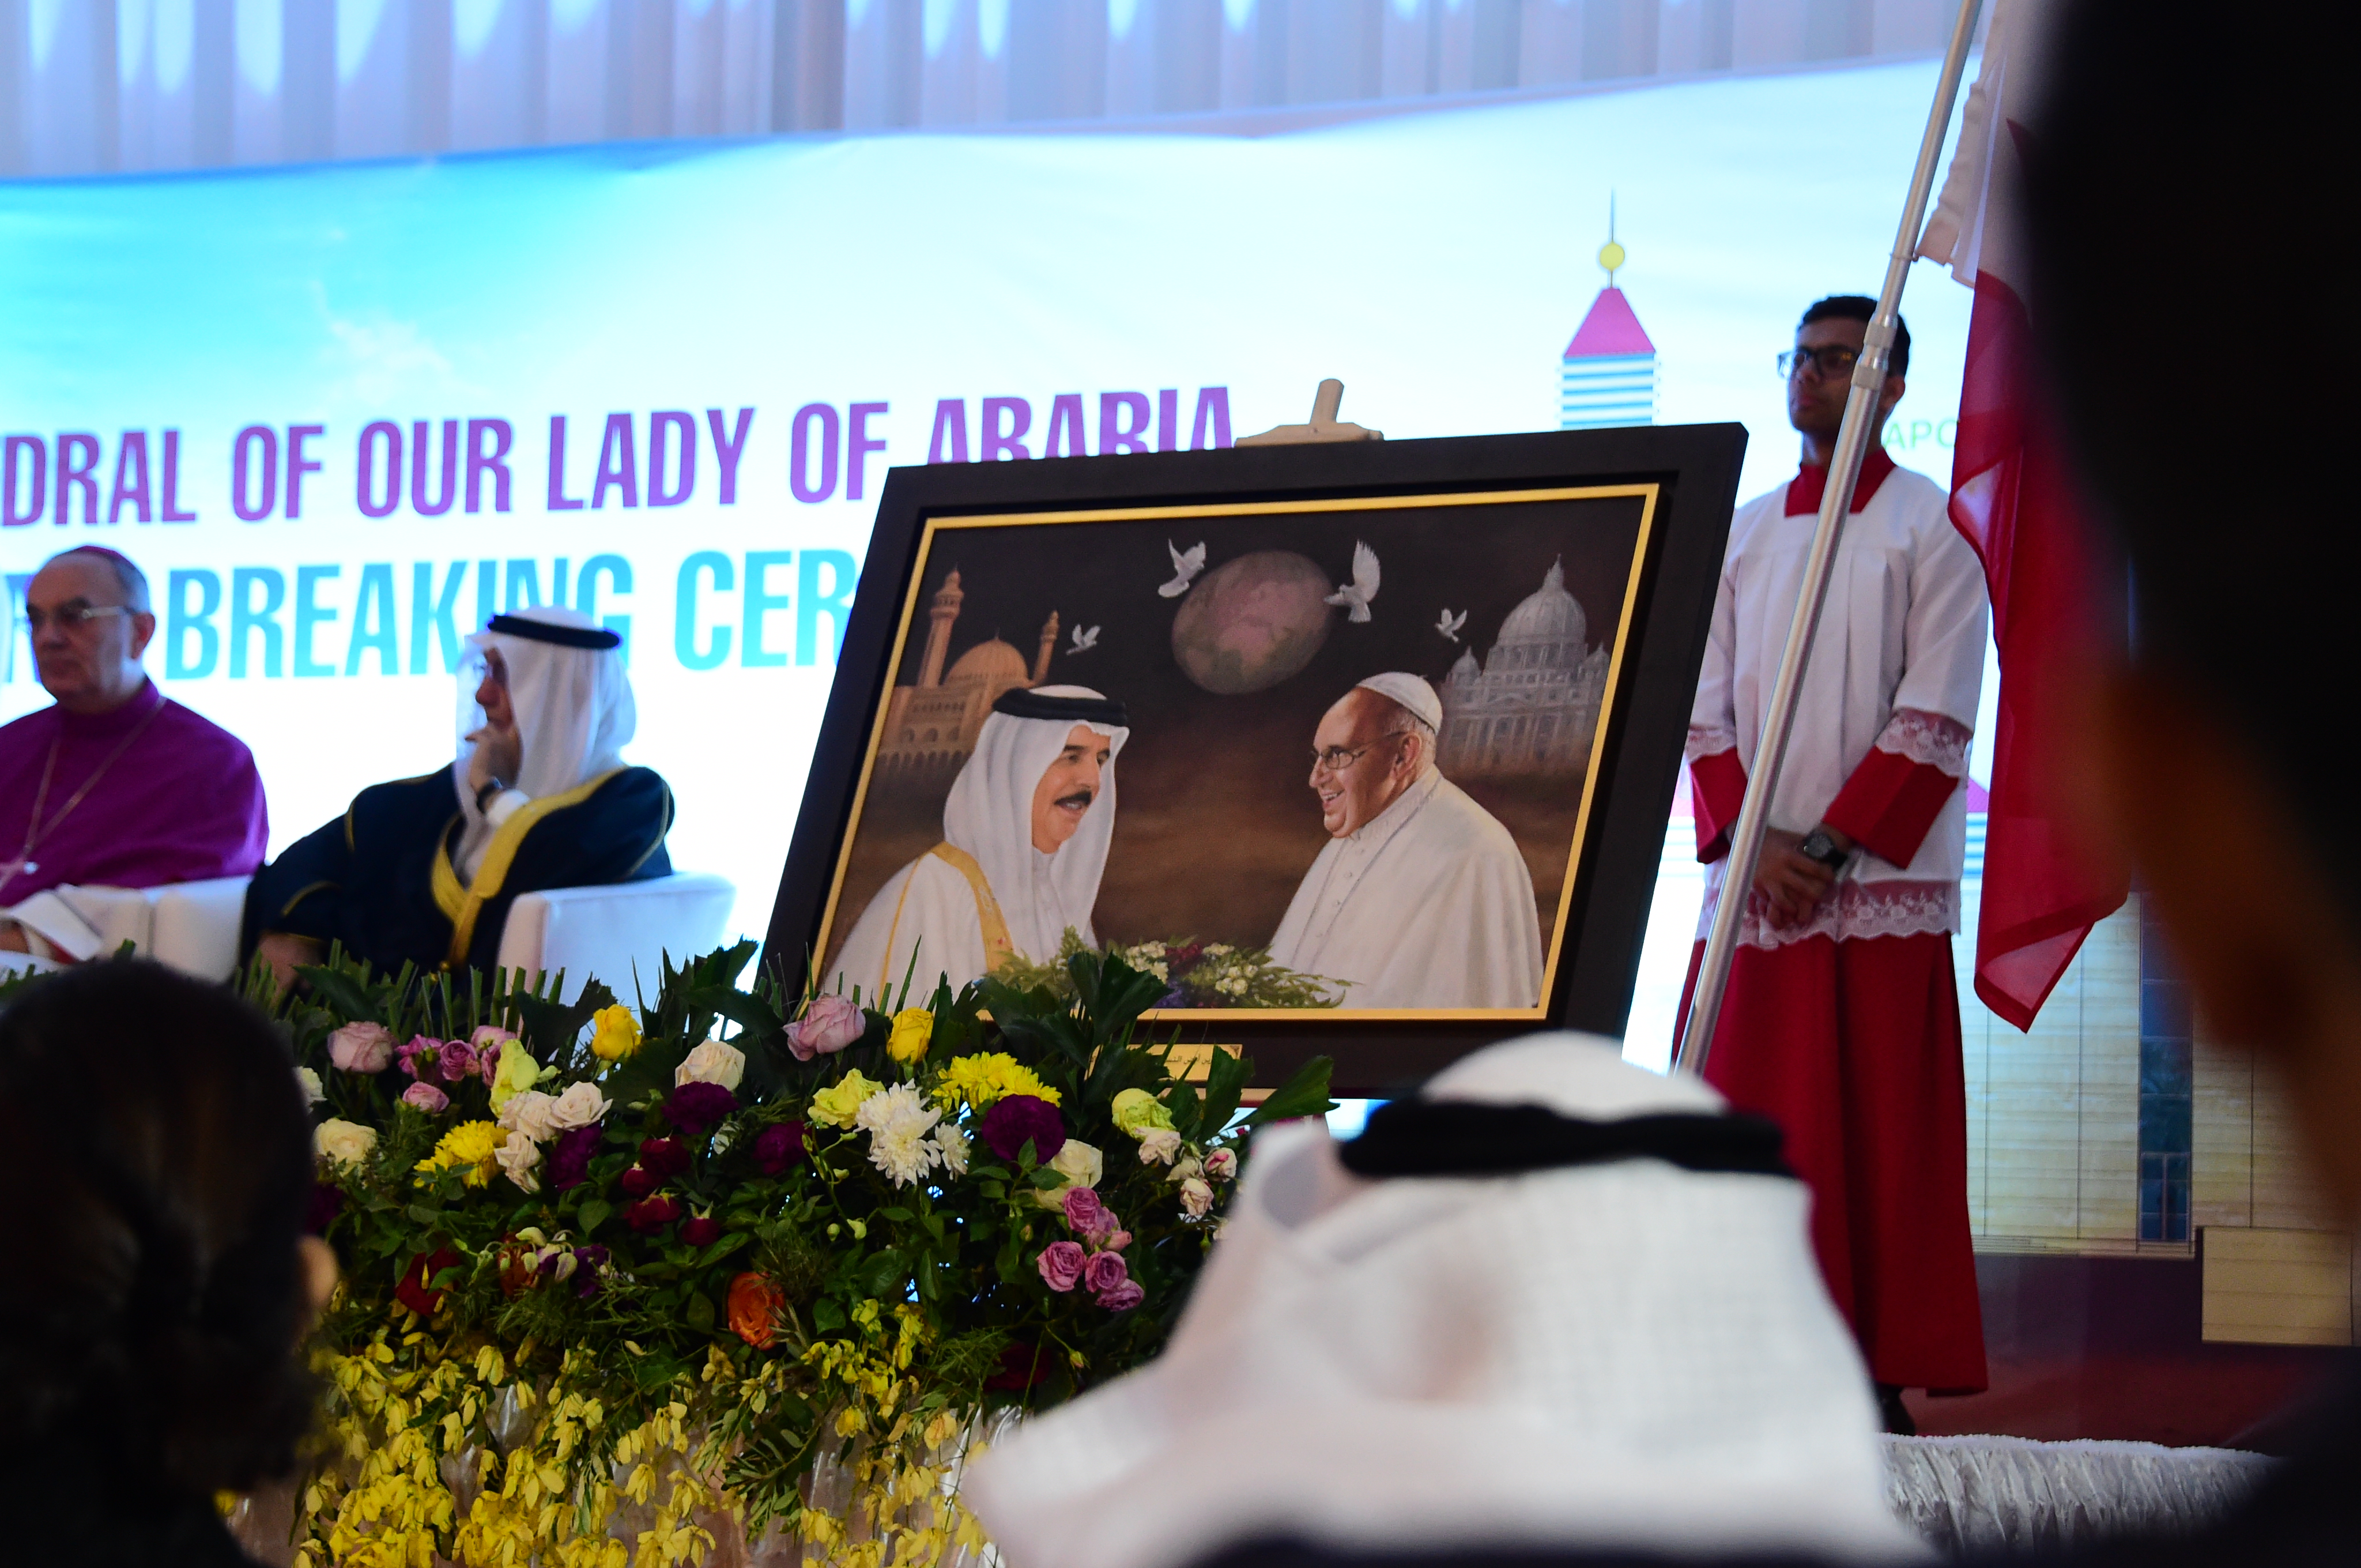 Ponen primera piedra de una nueva catedral de Bahréin, Arabia. ACN contribuye para el proyecto